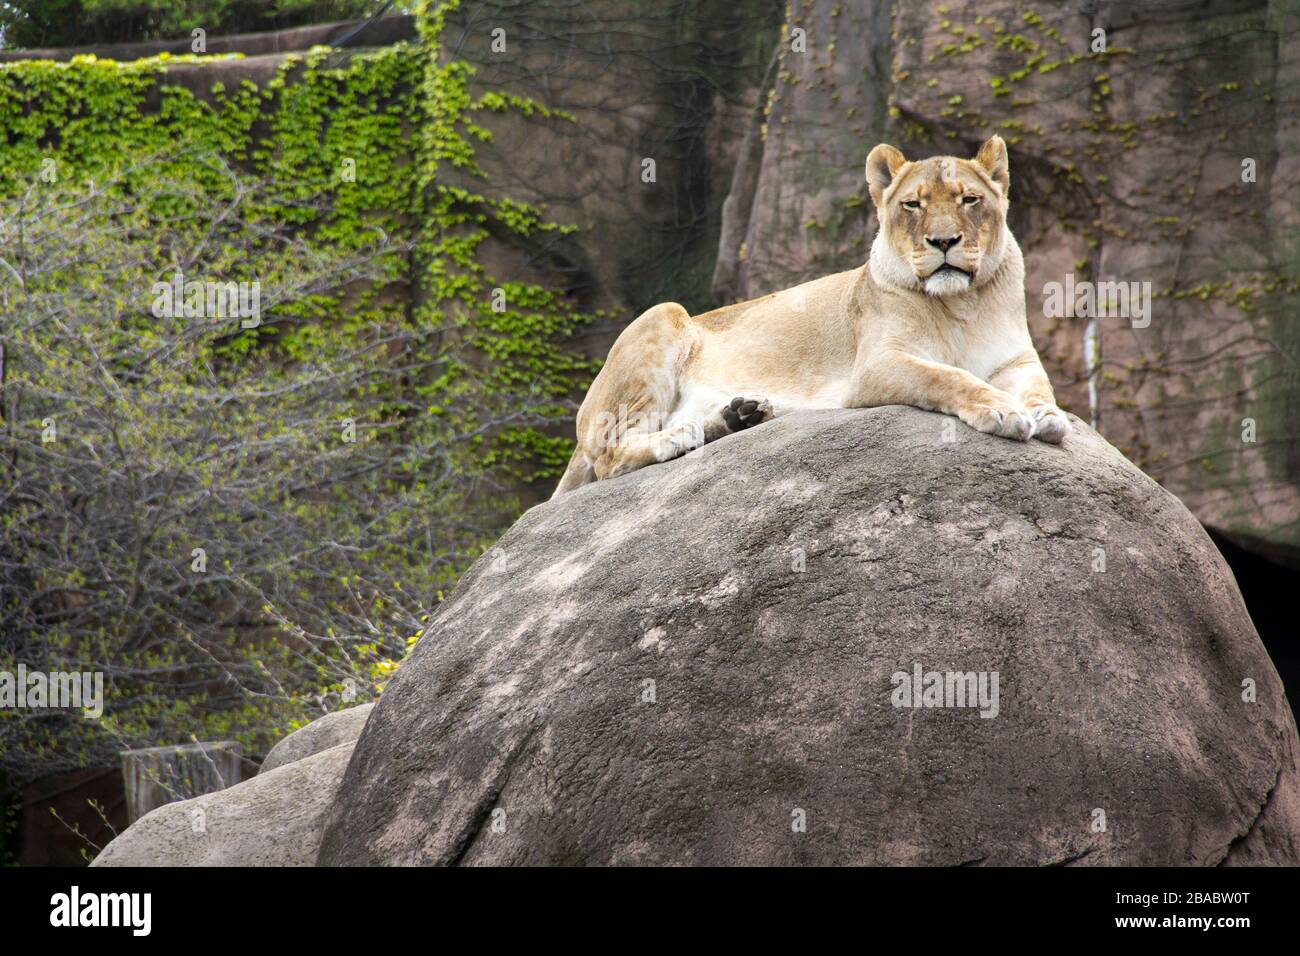 Lion africain (Panthera leo krugeri) au zoo de Lincoln Park, Lincoln Park, Chicago, Illinois, États-Unis Banque D'Images